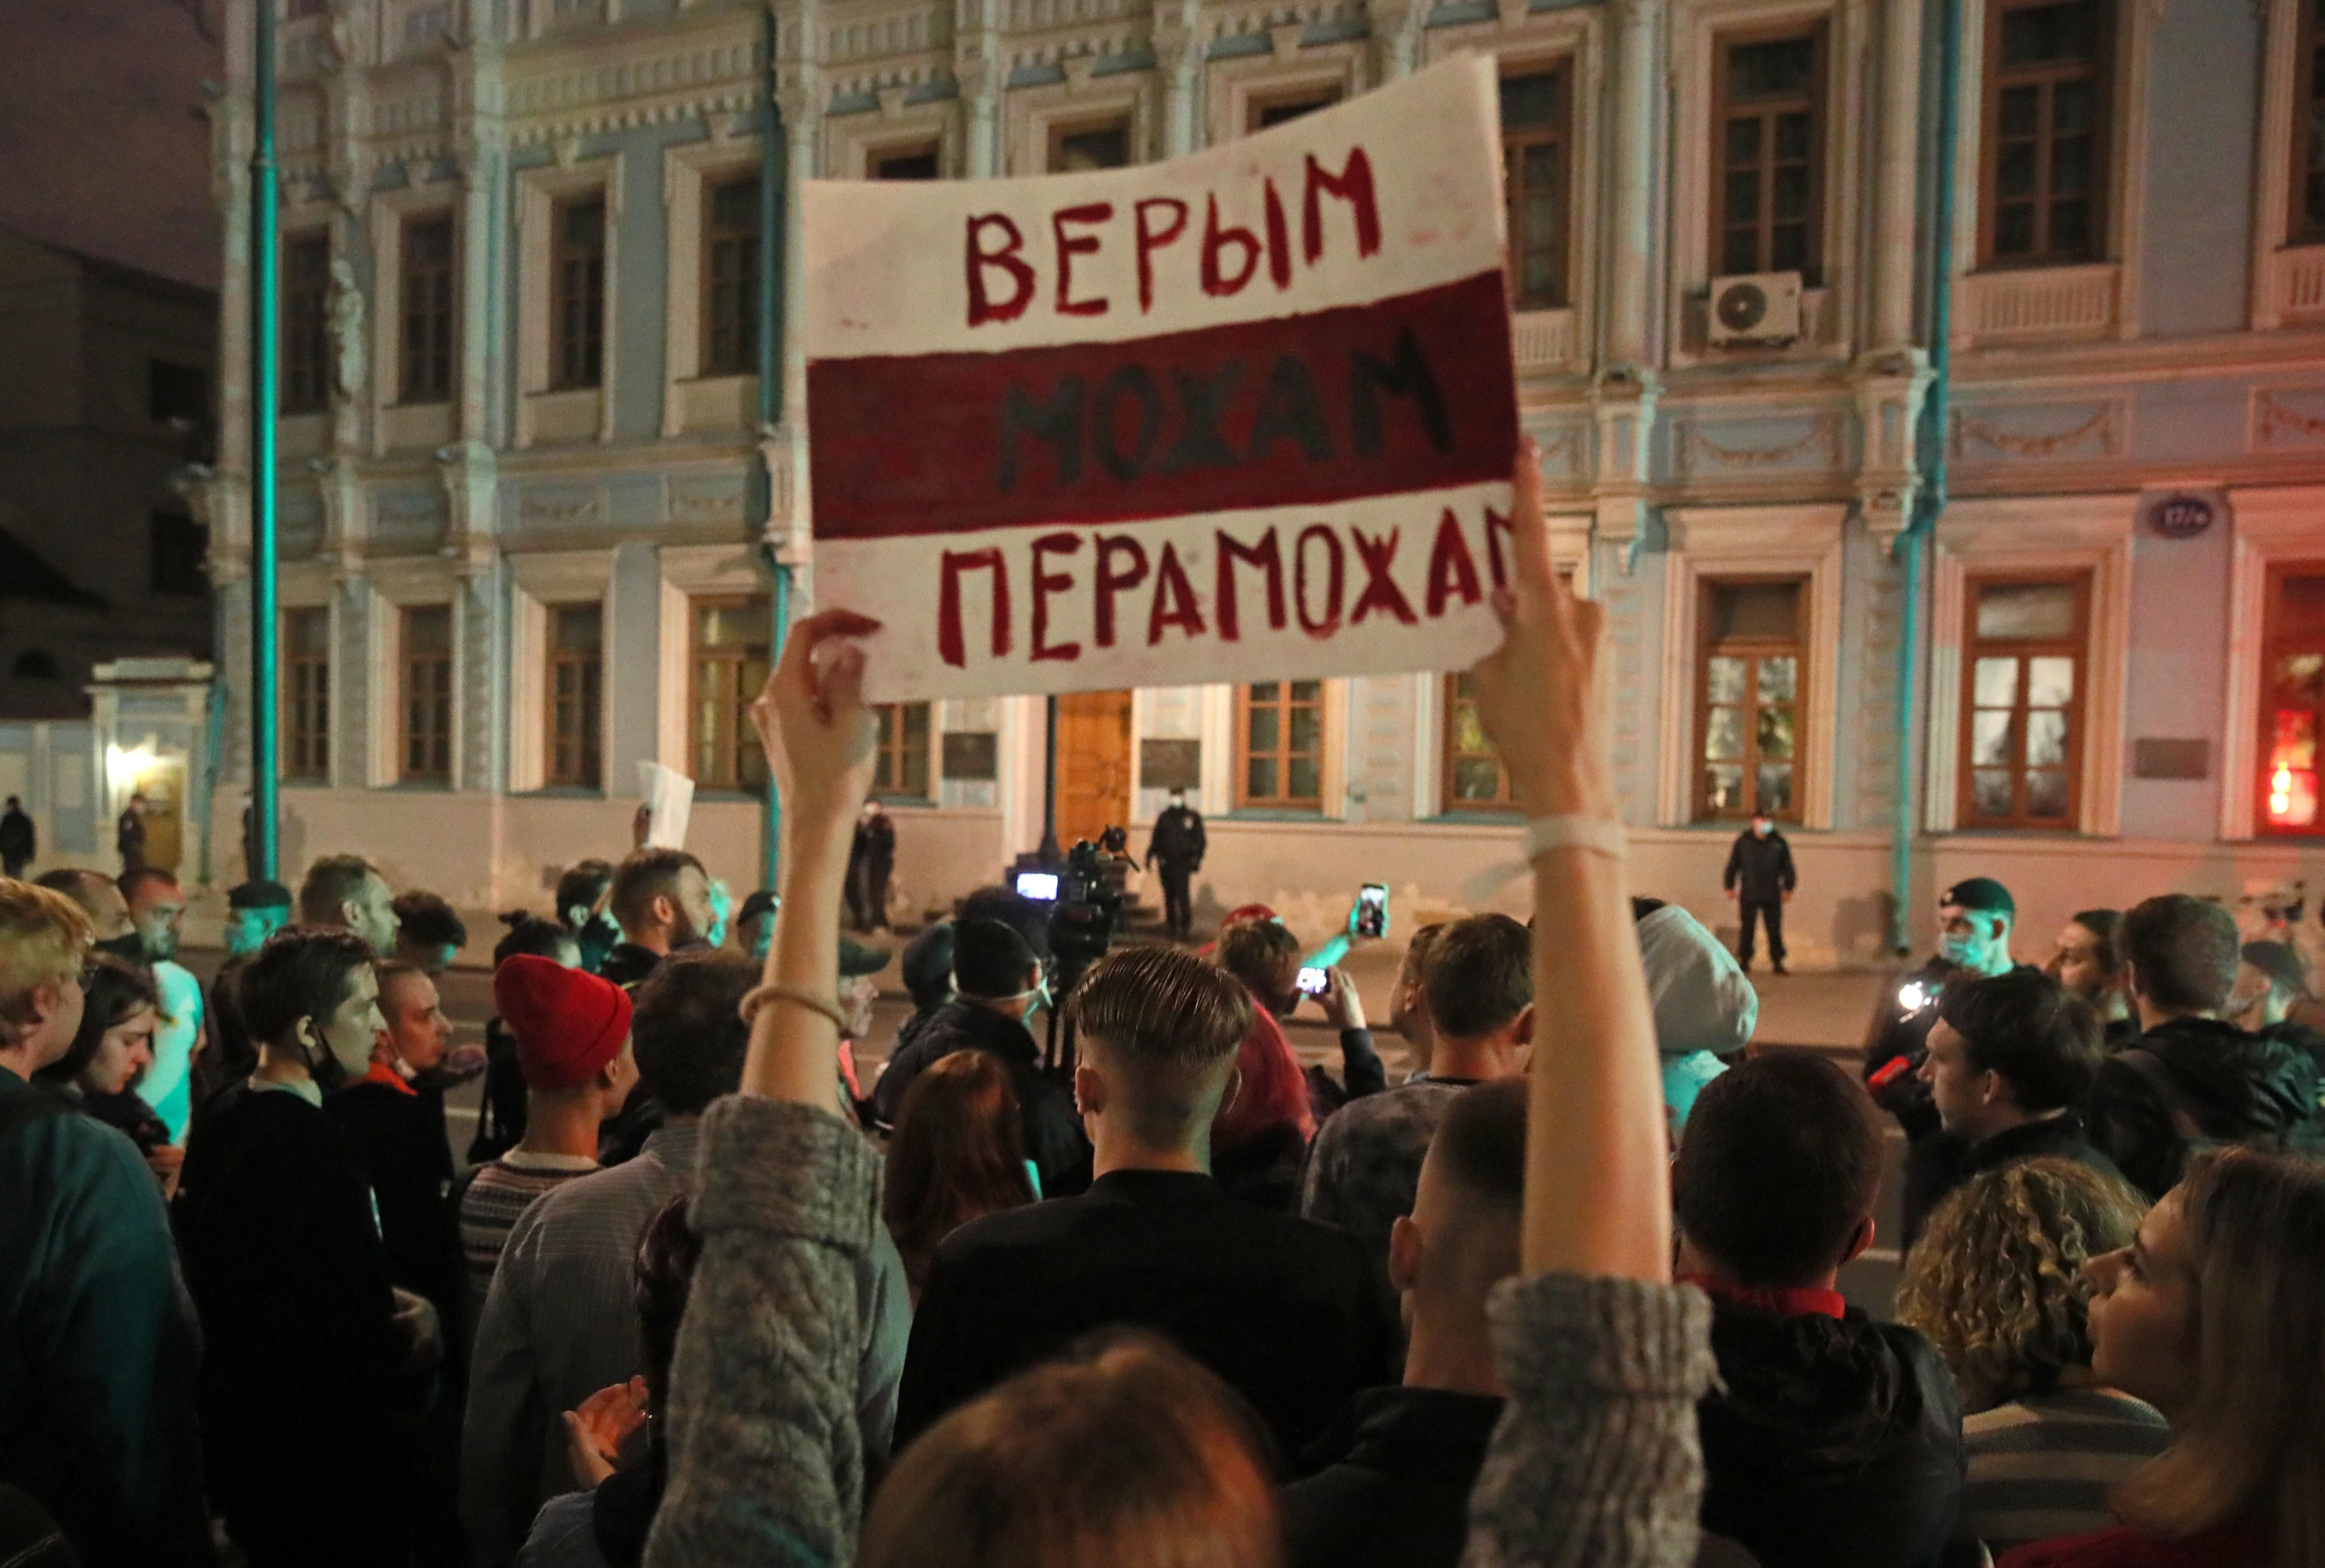 "Беларусь гораздо слабее Украины": может ли Путин забрать себе Беларусь